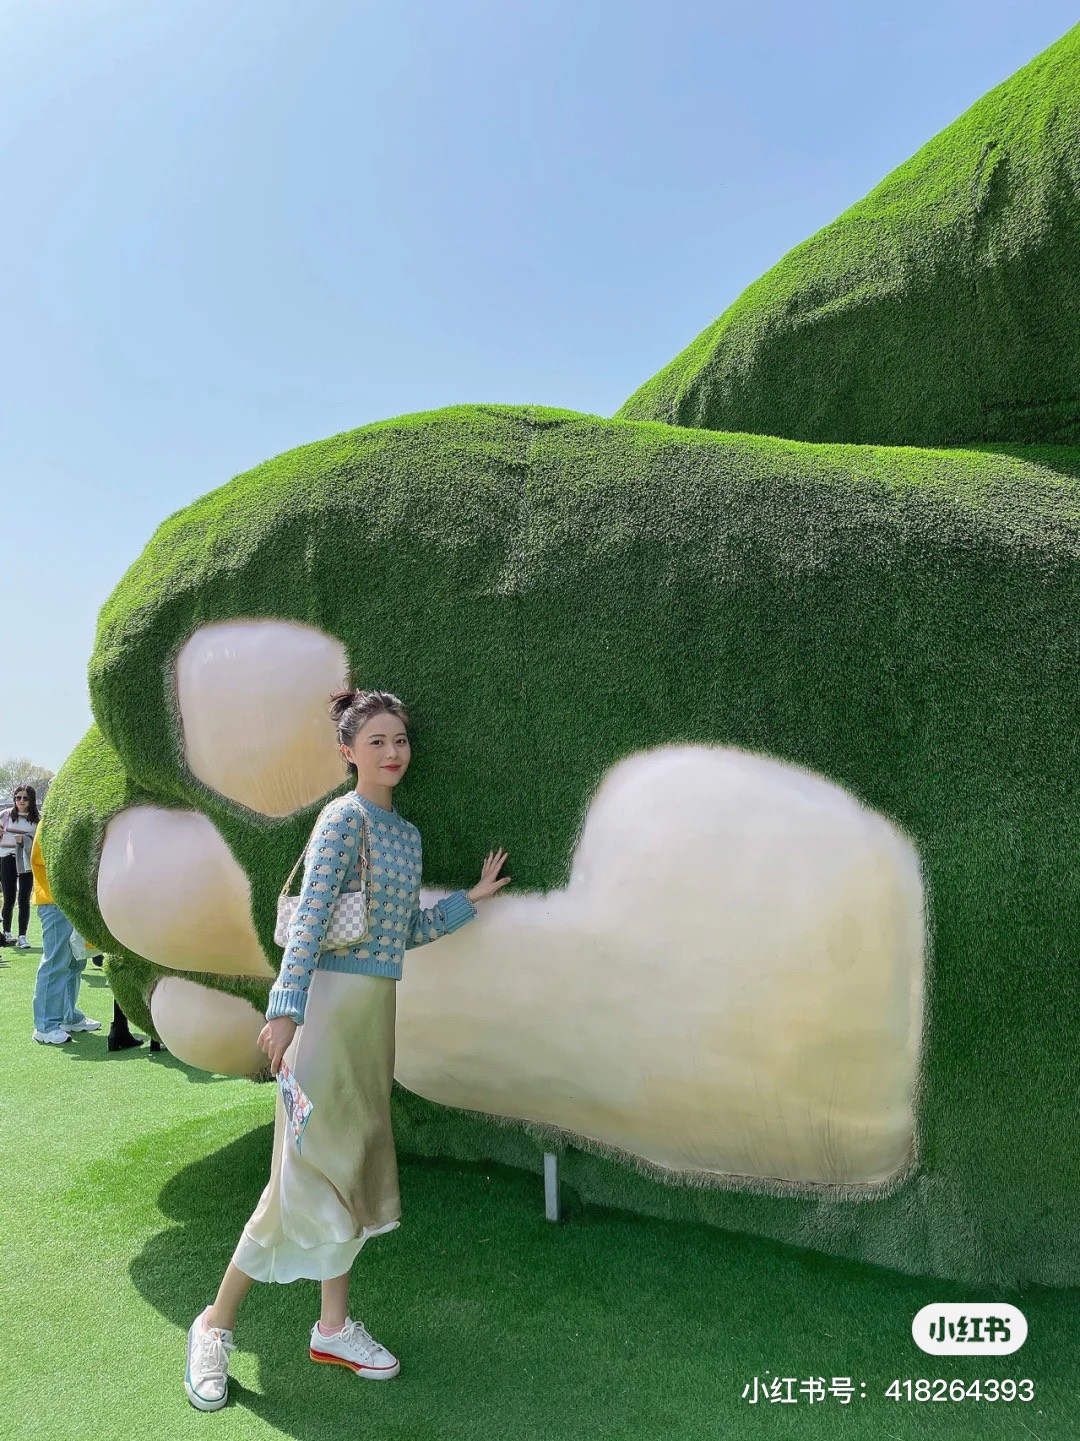 【海外】朝聖巨大貓咪！30米高沈睡「巨貓沙灘島」成話題　綠色「貓貓山丘」還能摸大肉球！